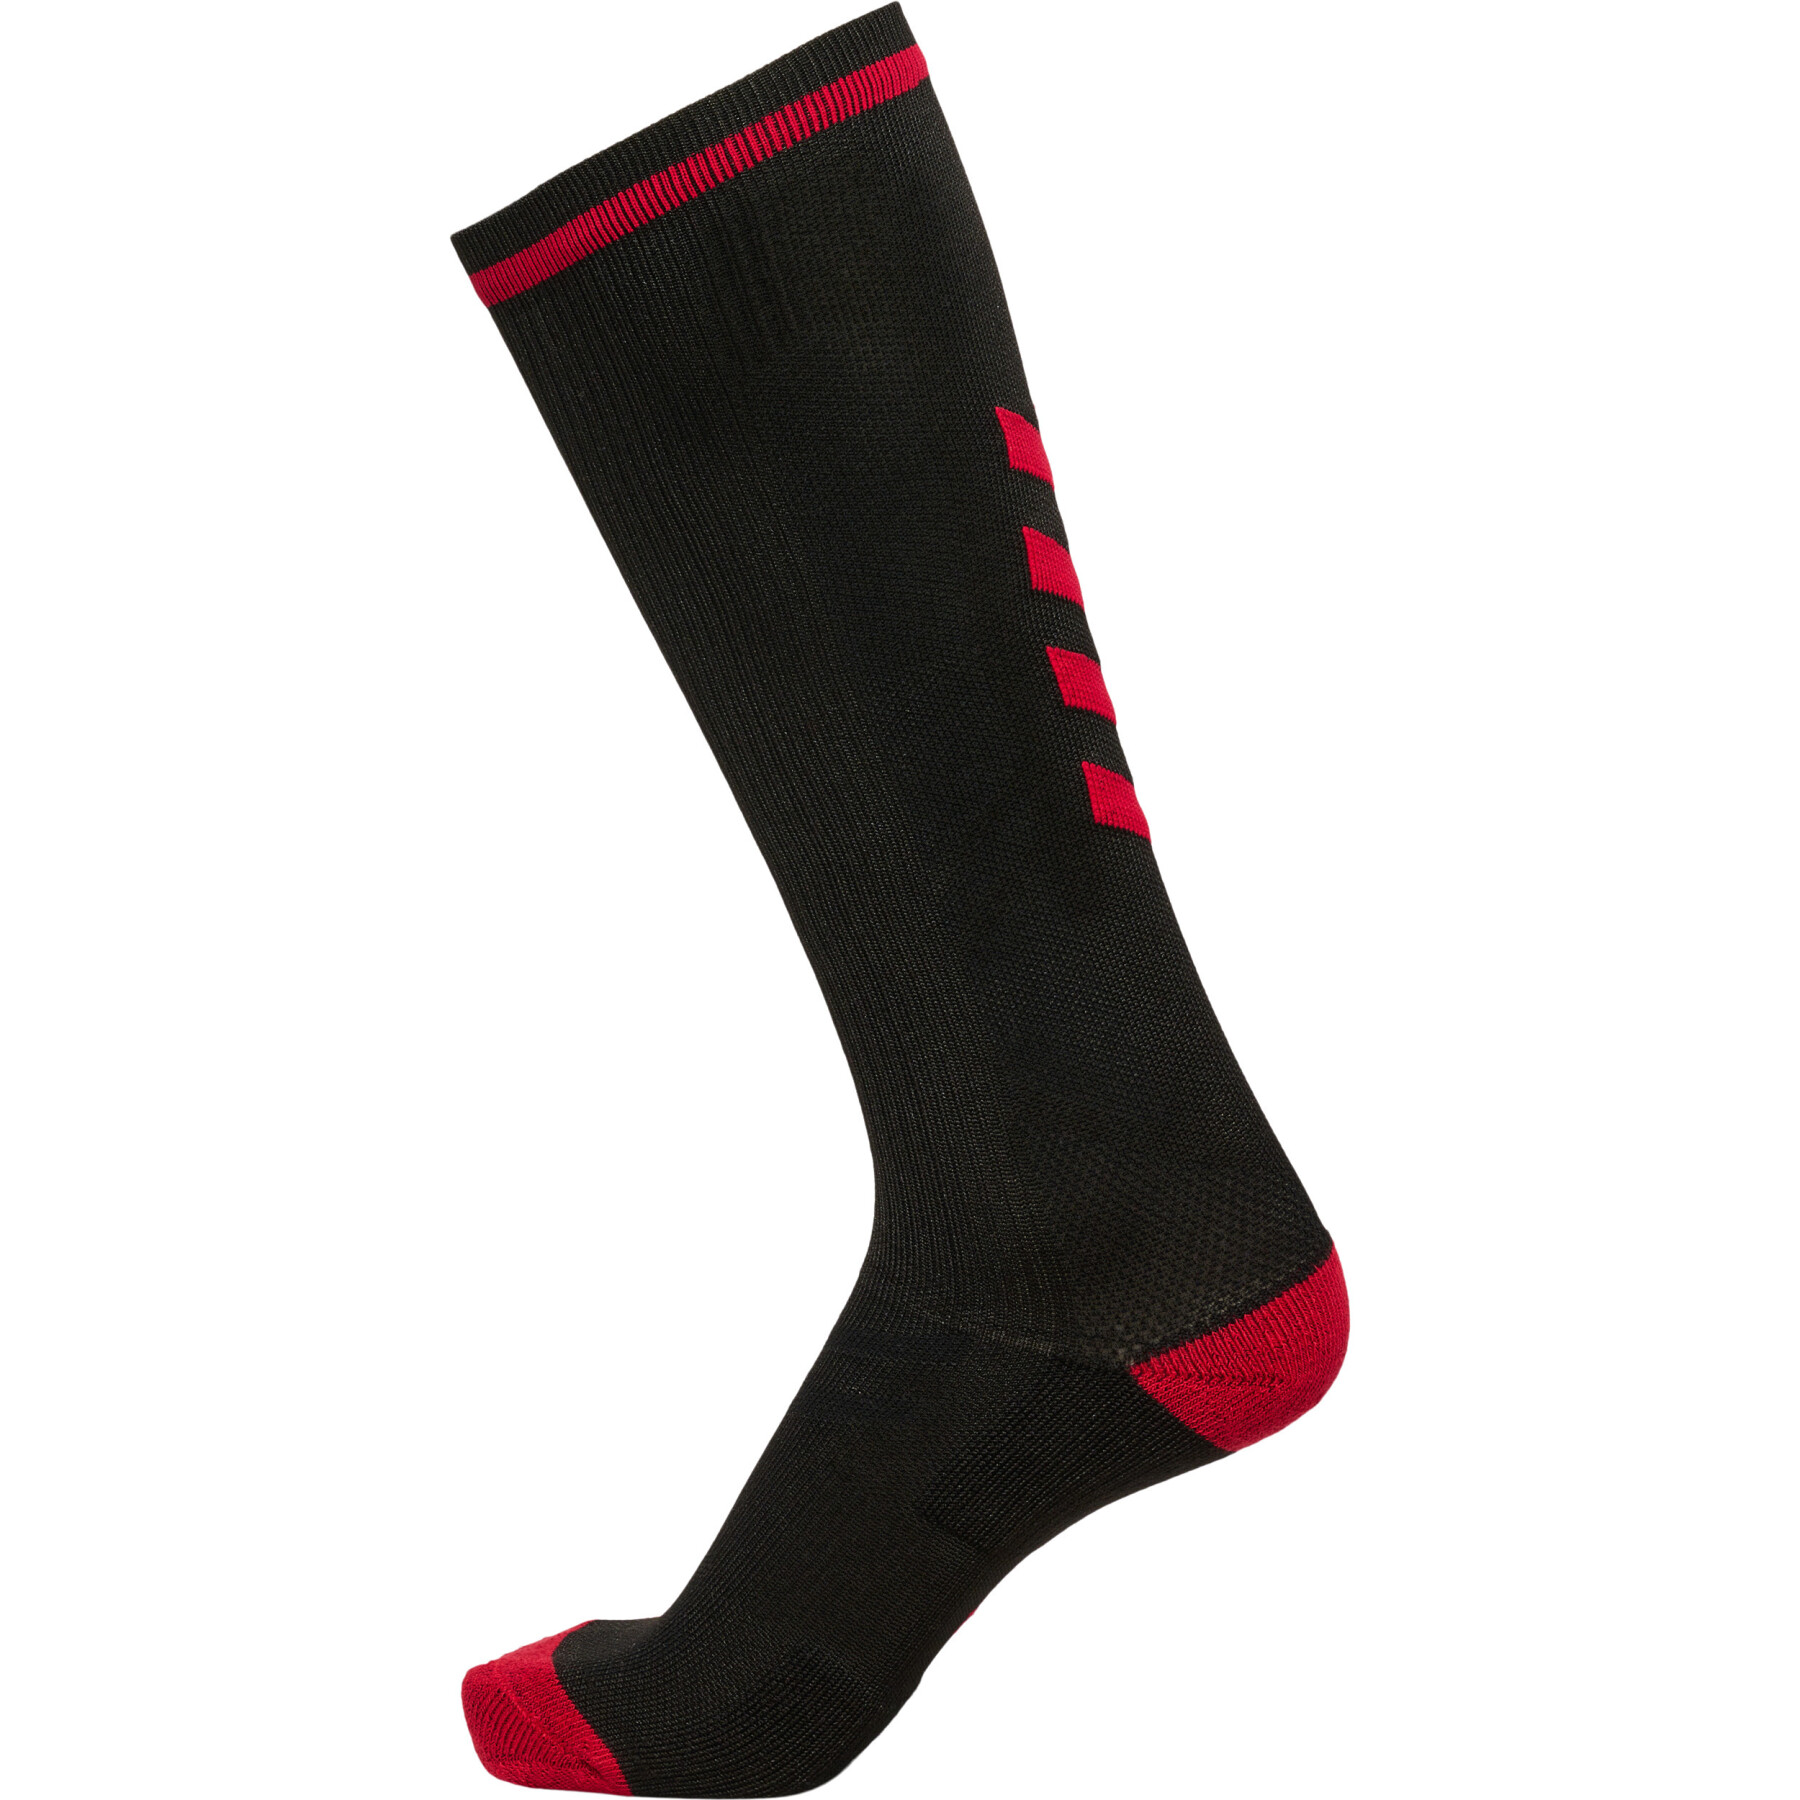 Socks Hummel Elite Indoor High - Socks - Men's wear - Handball wear